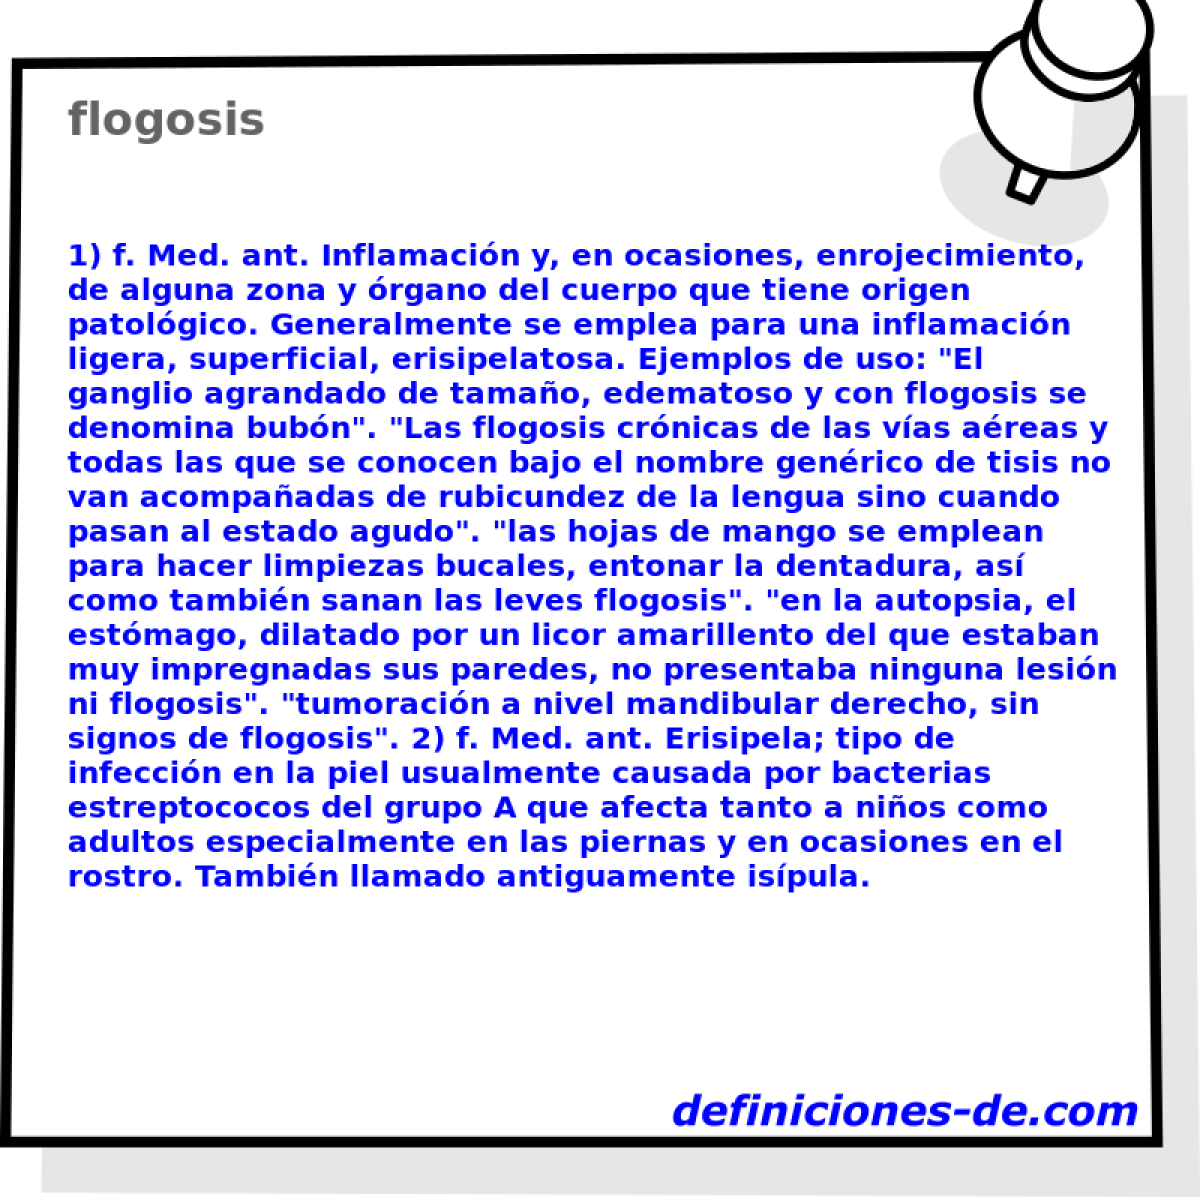 flogosis 